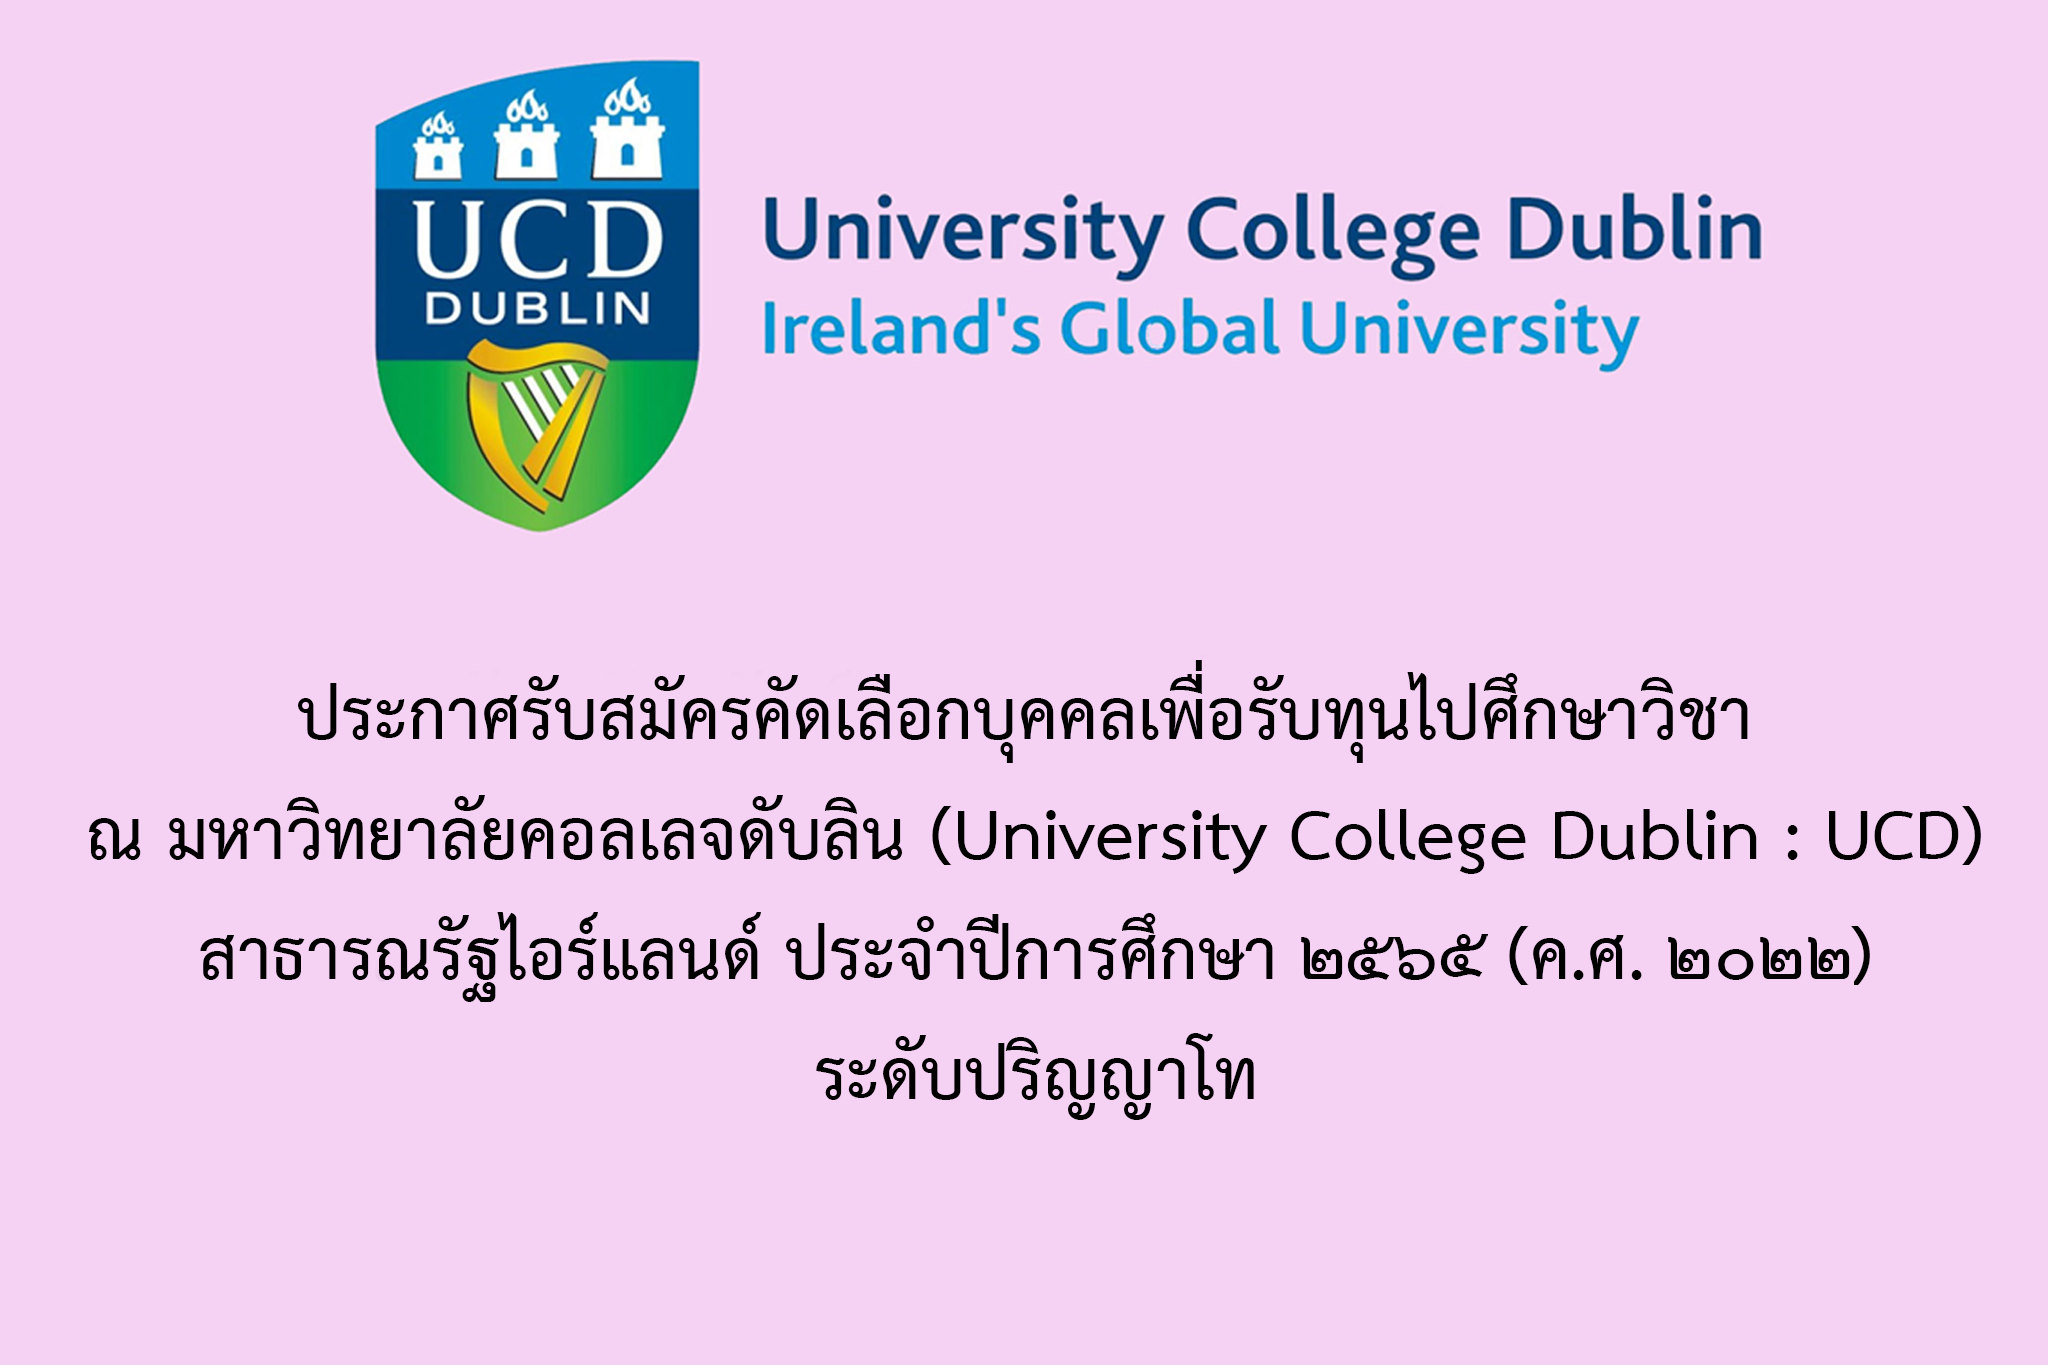 ประกาศรับสมัครคัดเลือกบุคคลเพื่อรับทุนไปศึกษาวิชา ณ มหาวิทยาลัยคอลเลจดับลิน (University College Dublin : UCD) สาธารณรัฐไอร์แลนด์ ประจำปีการศึกษา 2565 (ค.ศ. 2022) ระดับปริญญาโท